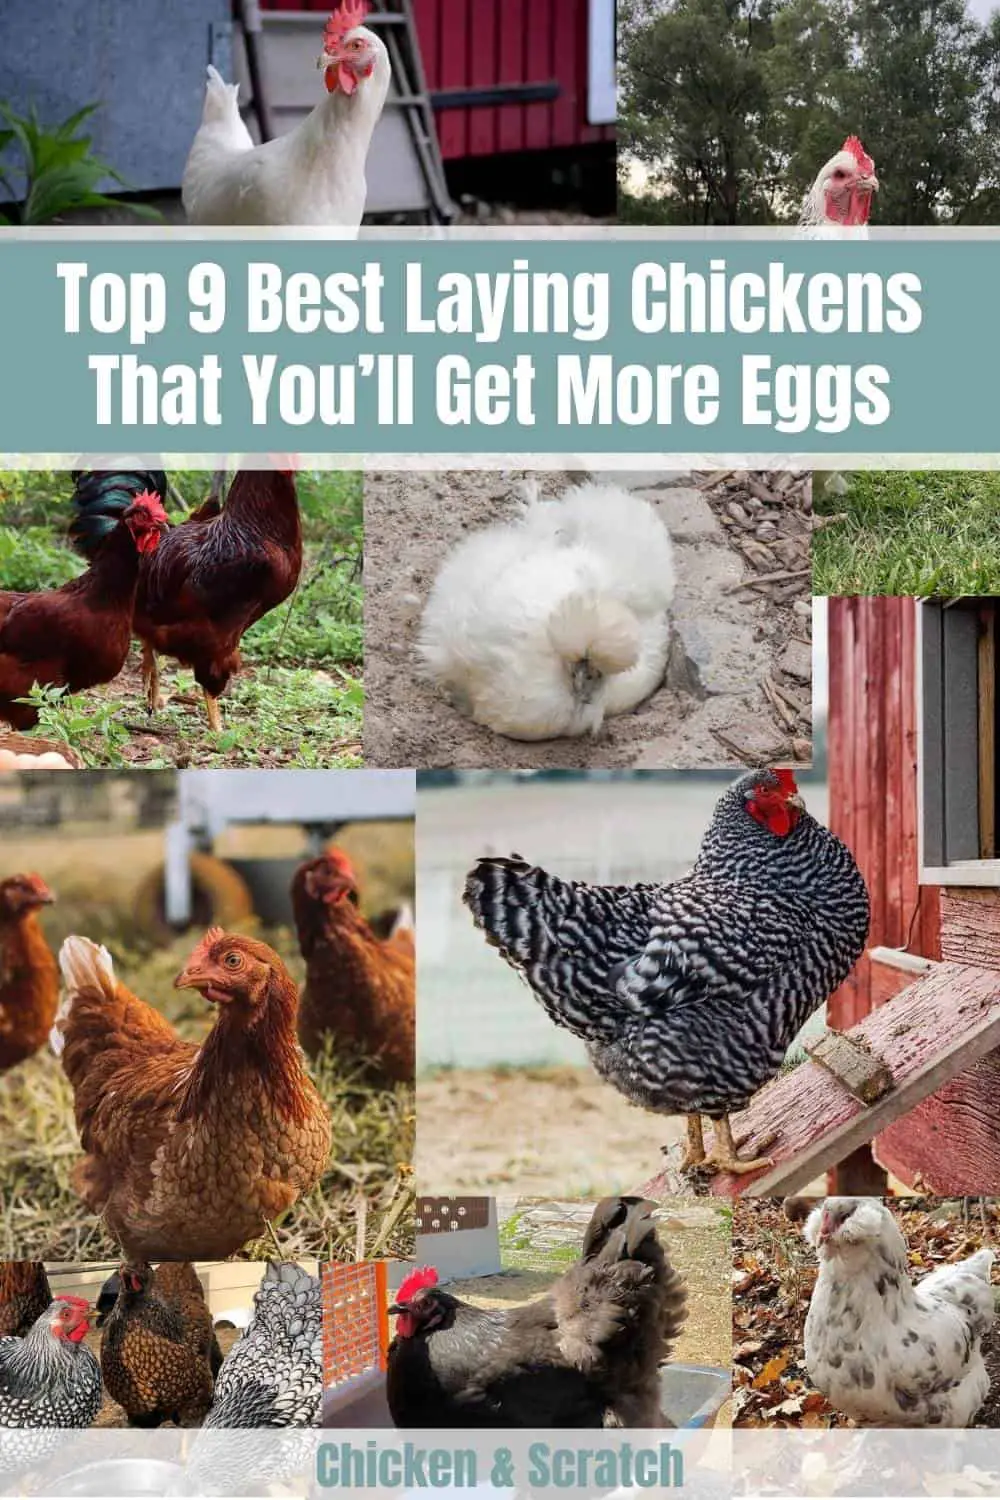 Las 9 mejores gallinas ponedoras de las que obtendrás más huevos (gráfico)  - Pol y Edro